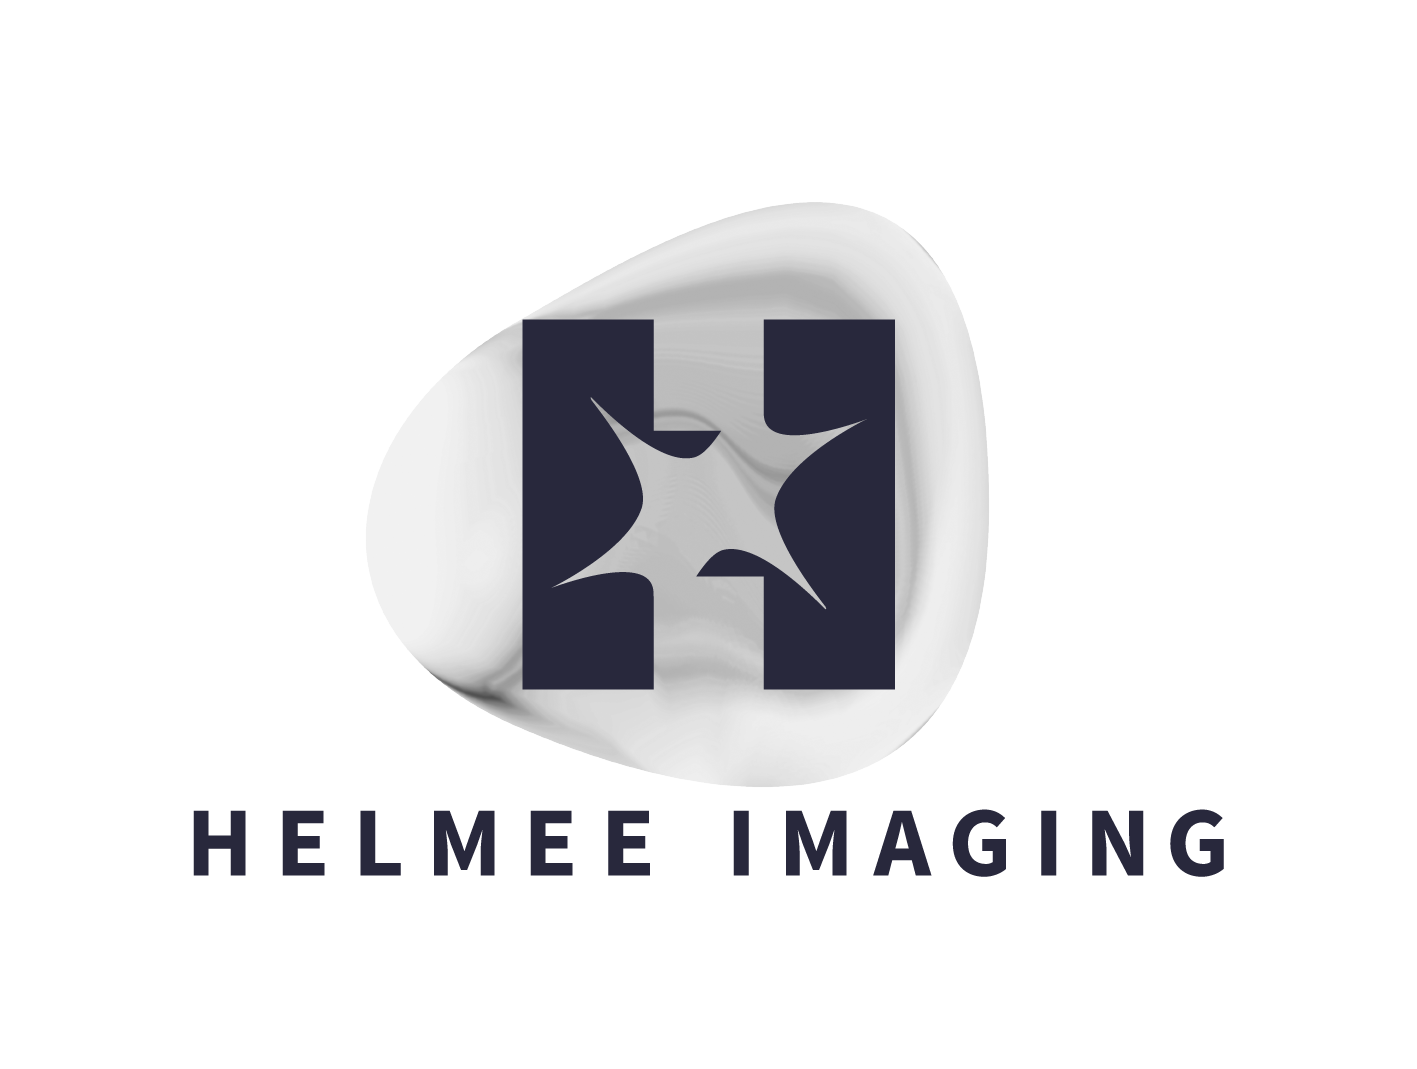 helmee imaging logo 2016 for light bg digi C